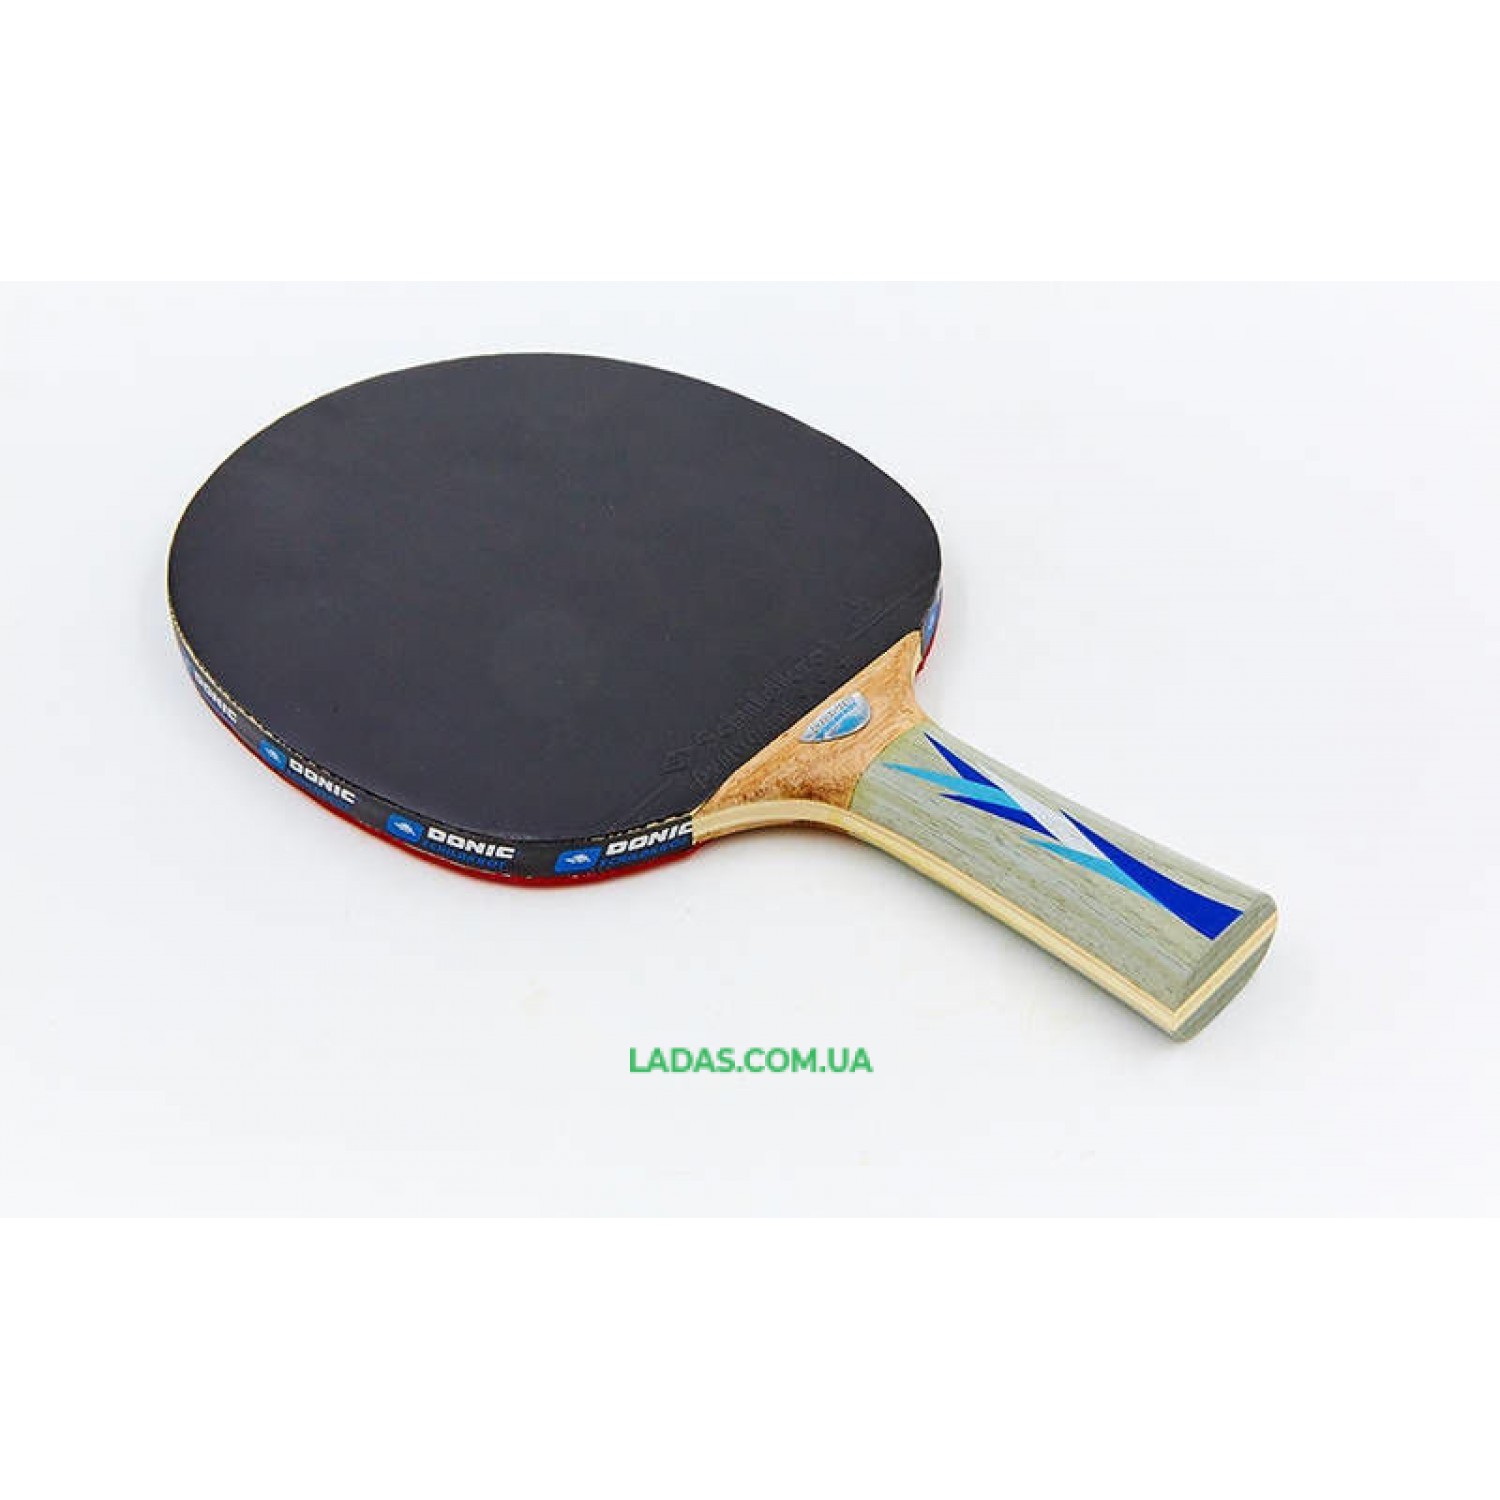 Набор для настольного тенниса 1 ракетка, 2 накладки DONIC LEVEL 600 Реплика